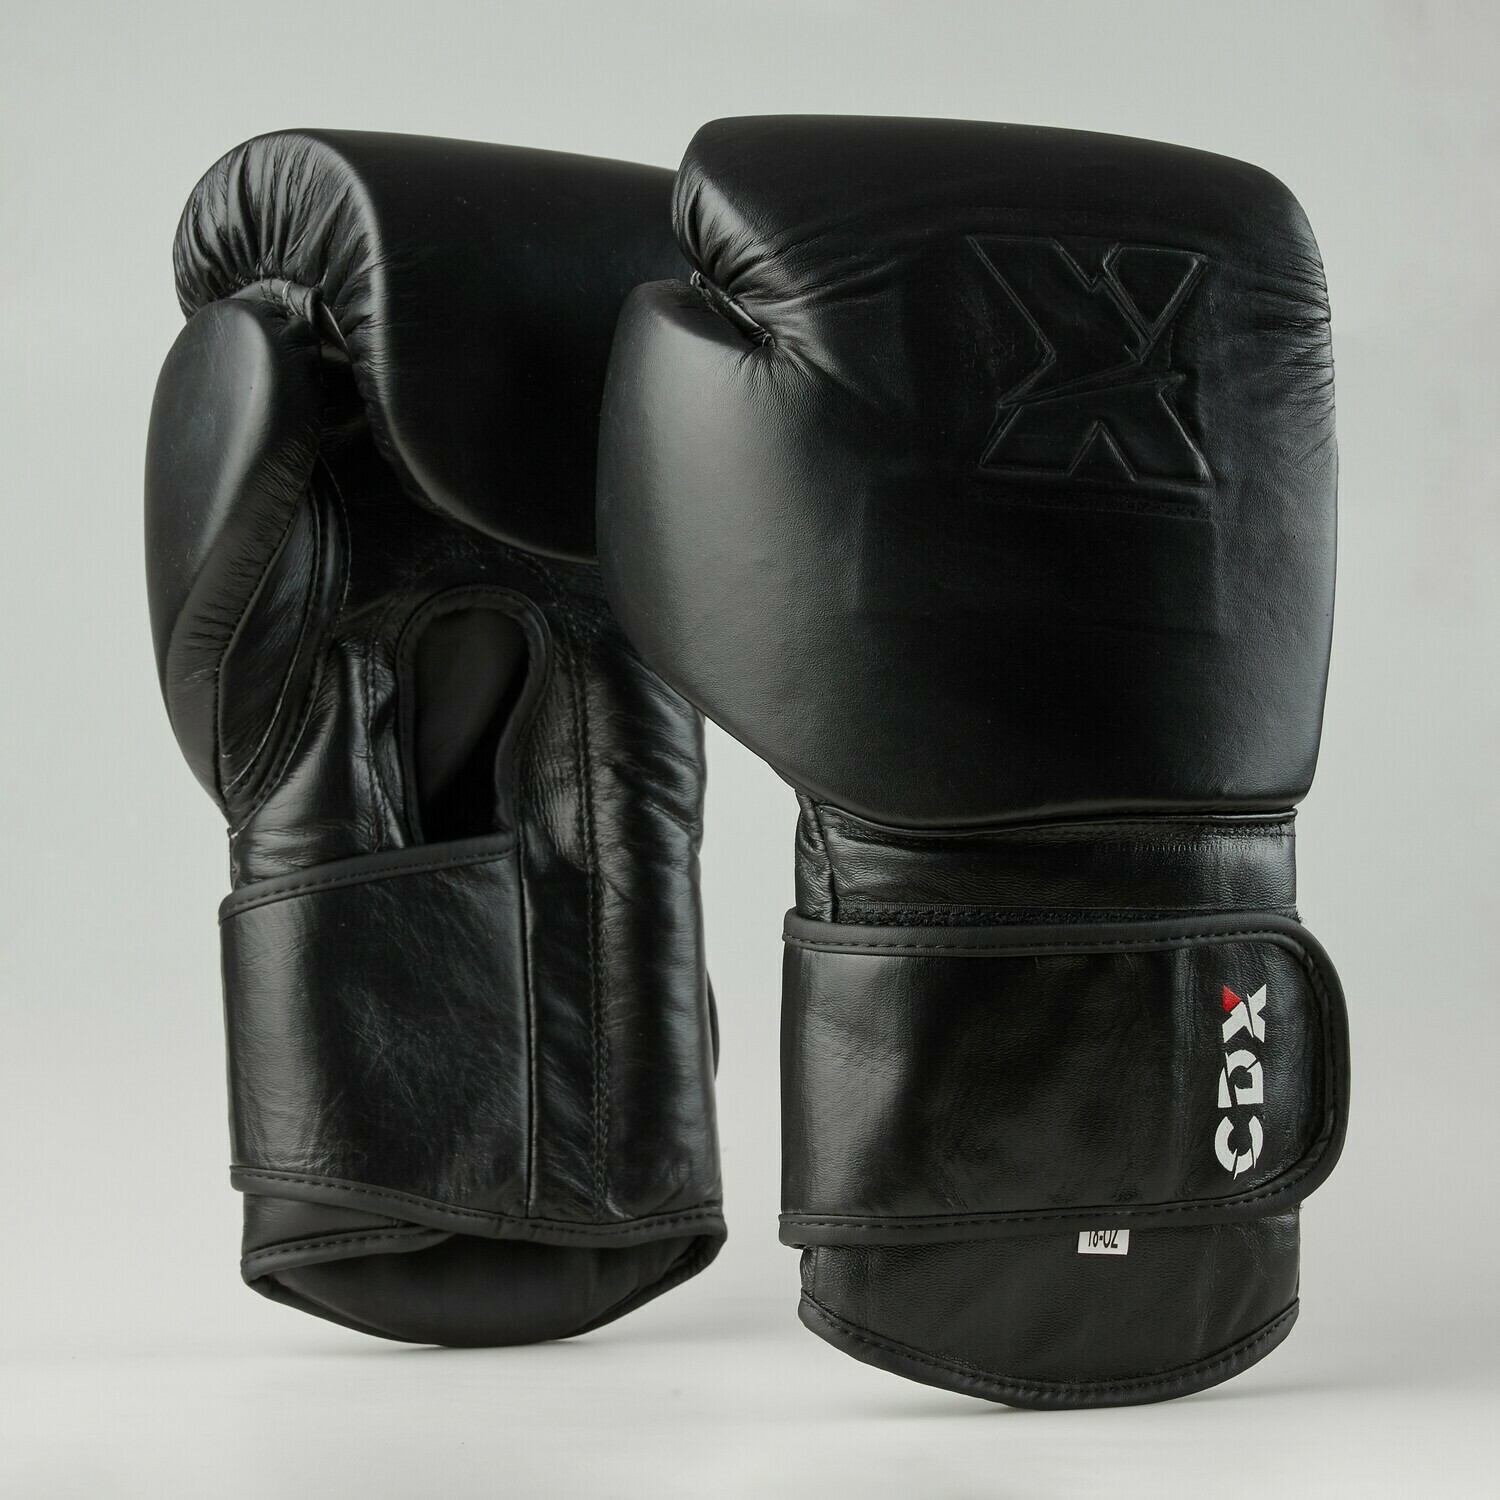 Боксерские перчатки из натуральной кожи "X" с технологией штамповки